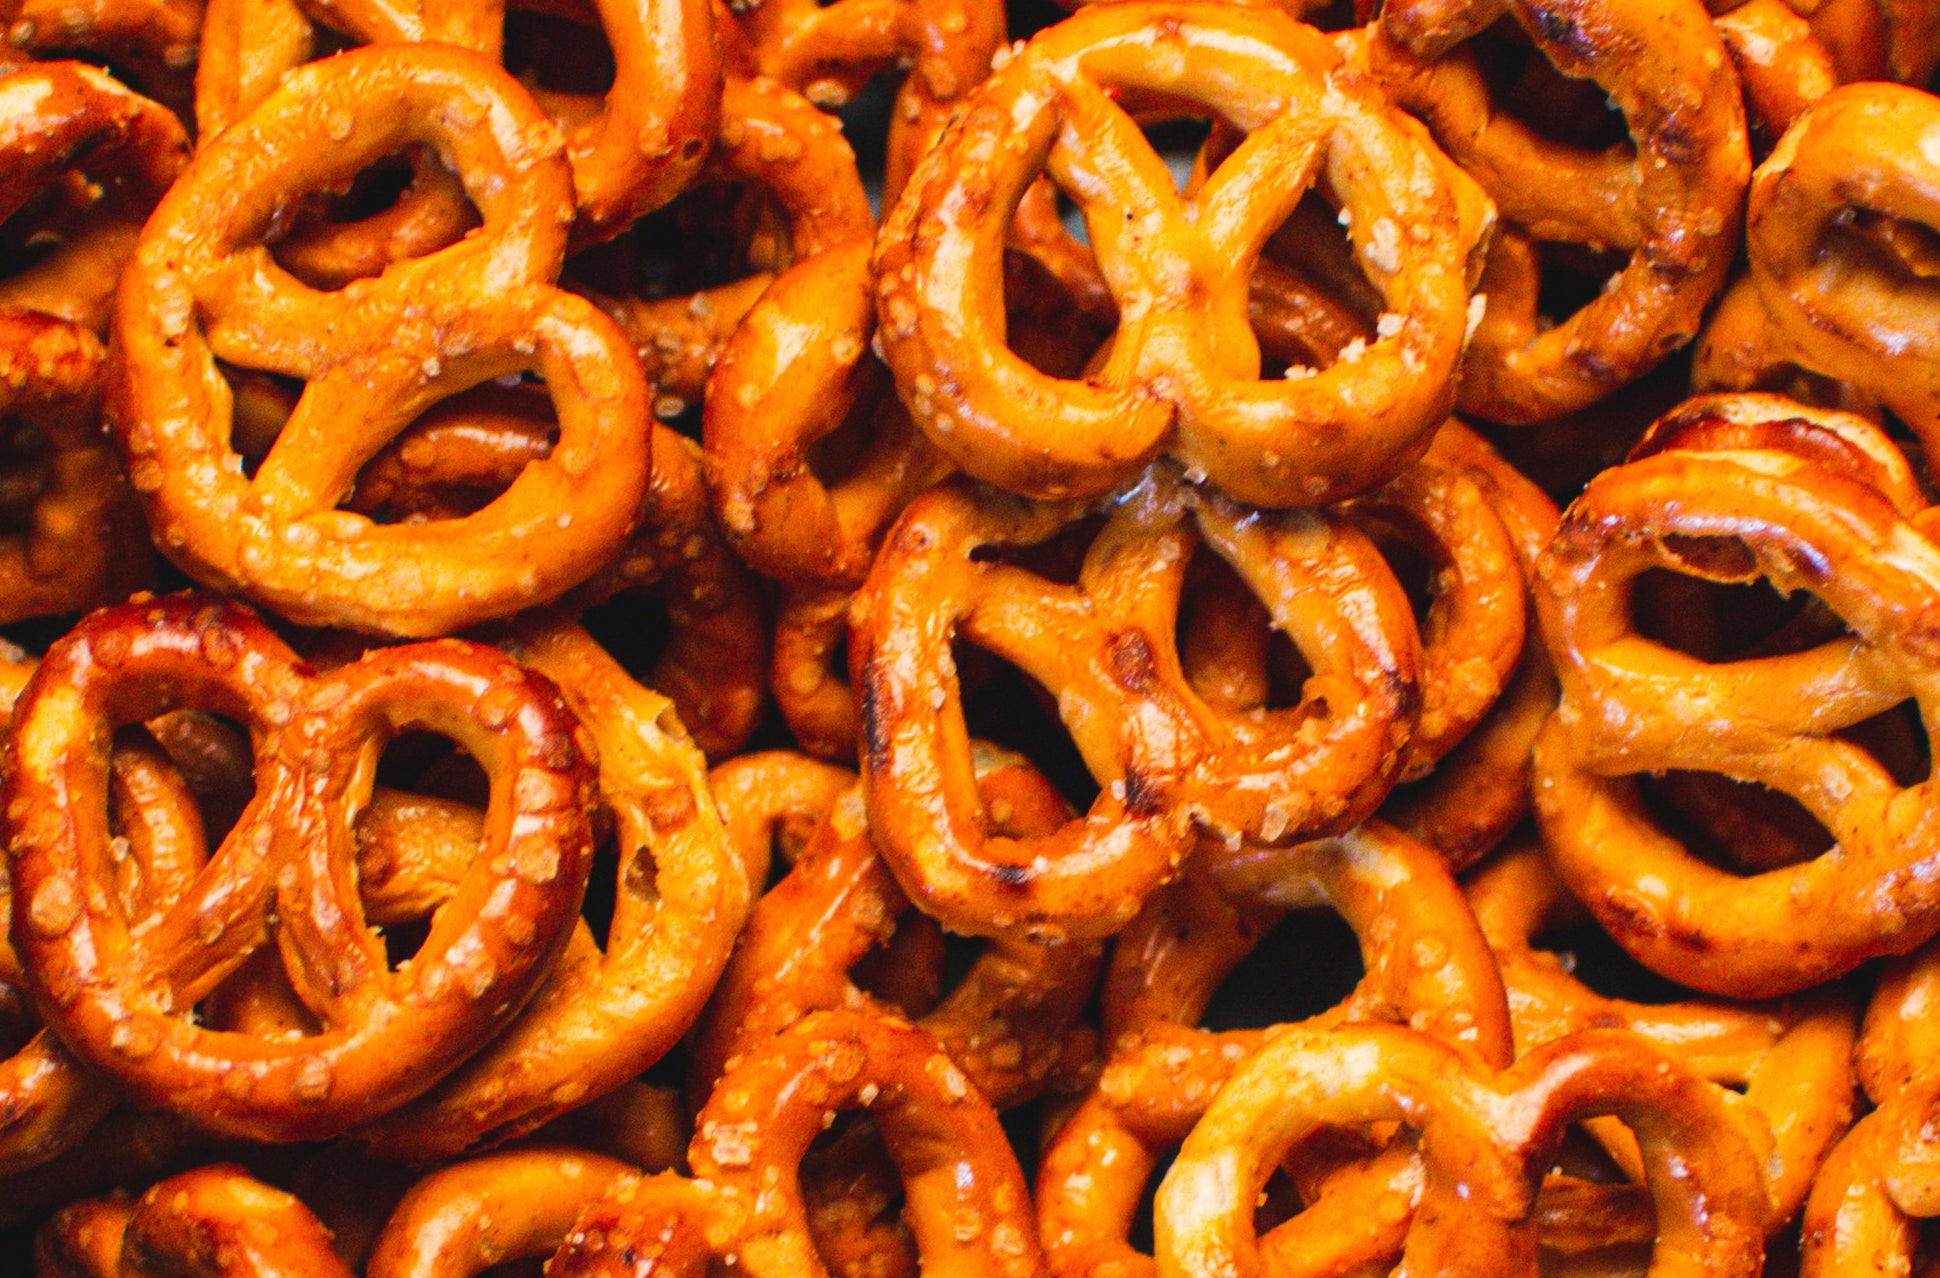 Bowl of pretzels